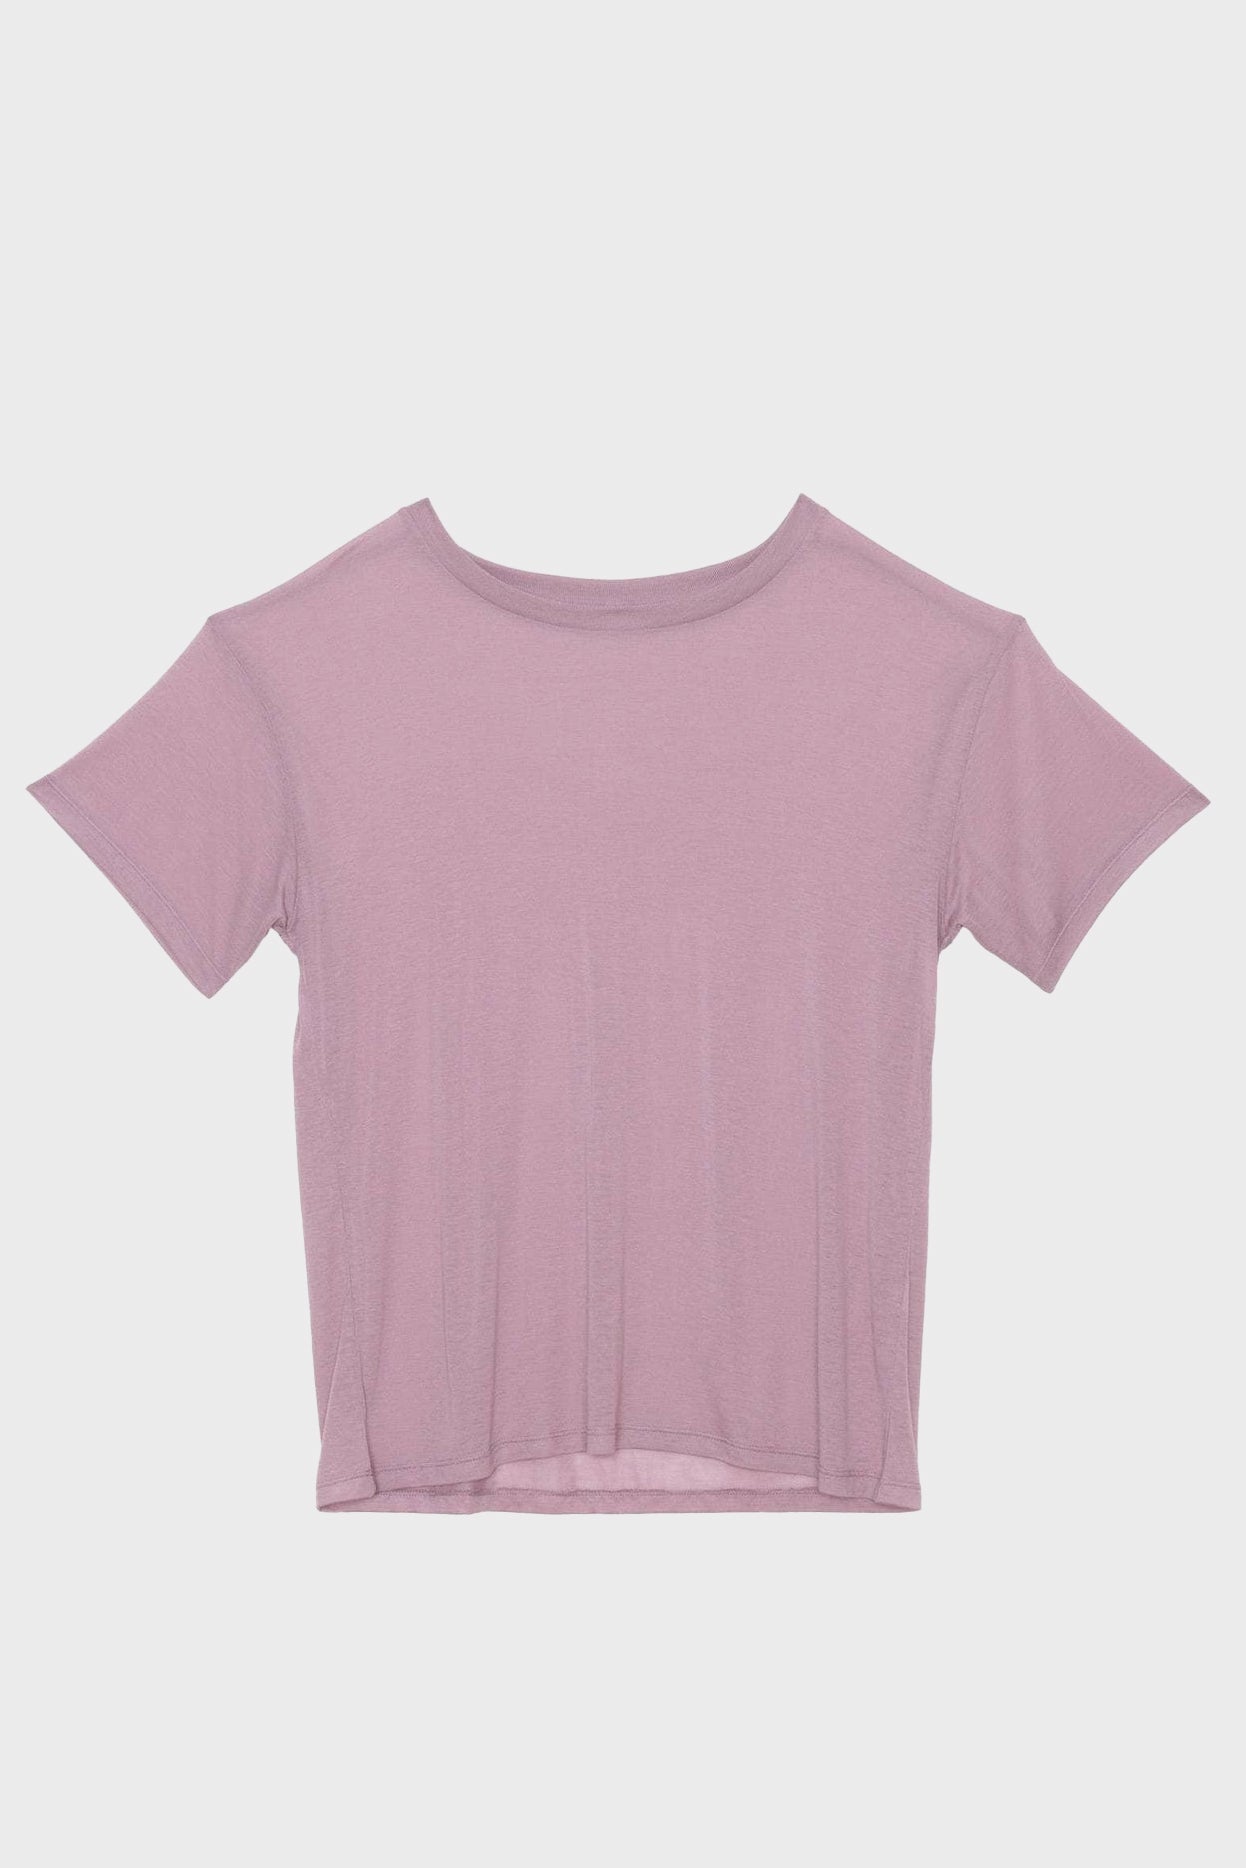 Loose Tee Shirt in Still Purple by Baserange